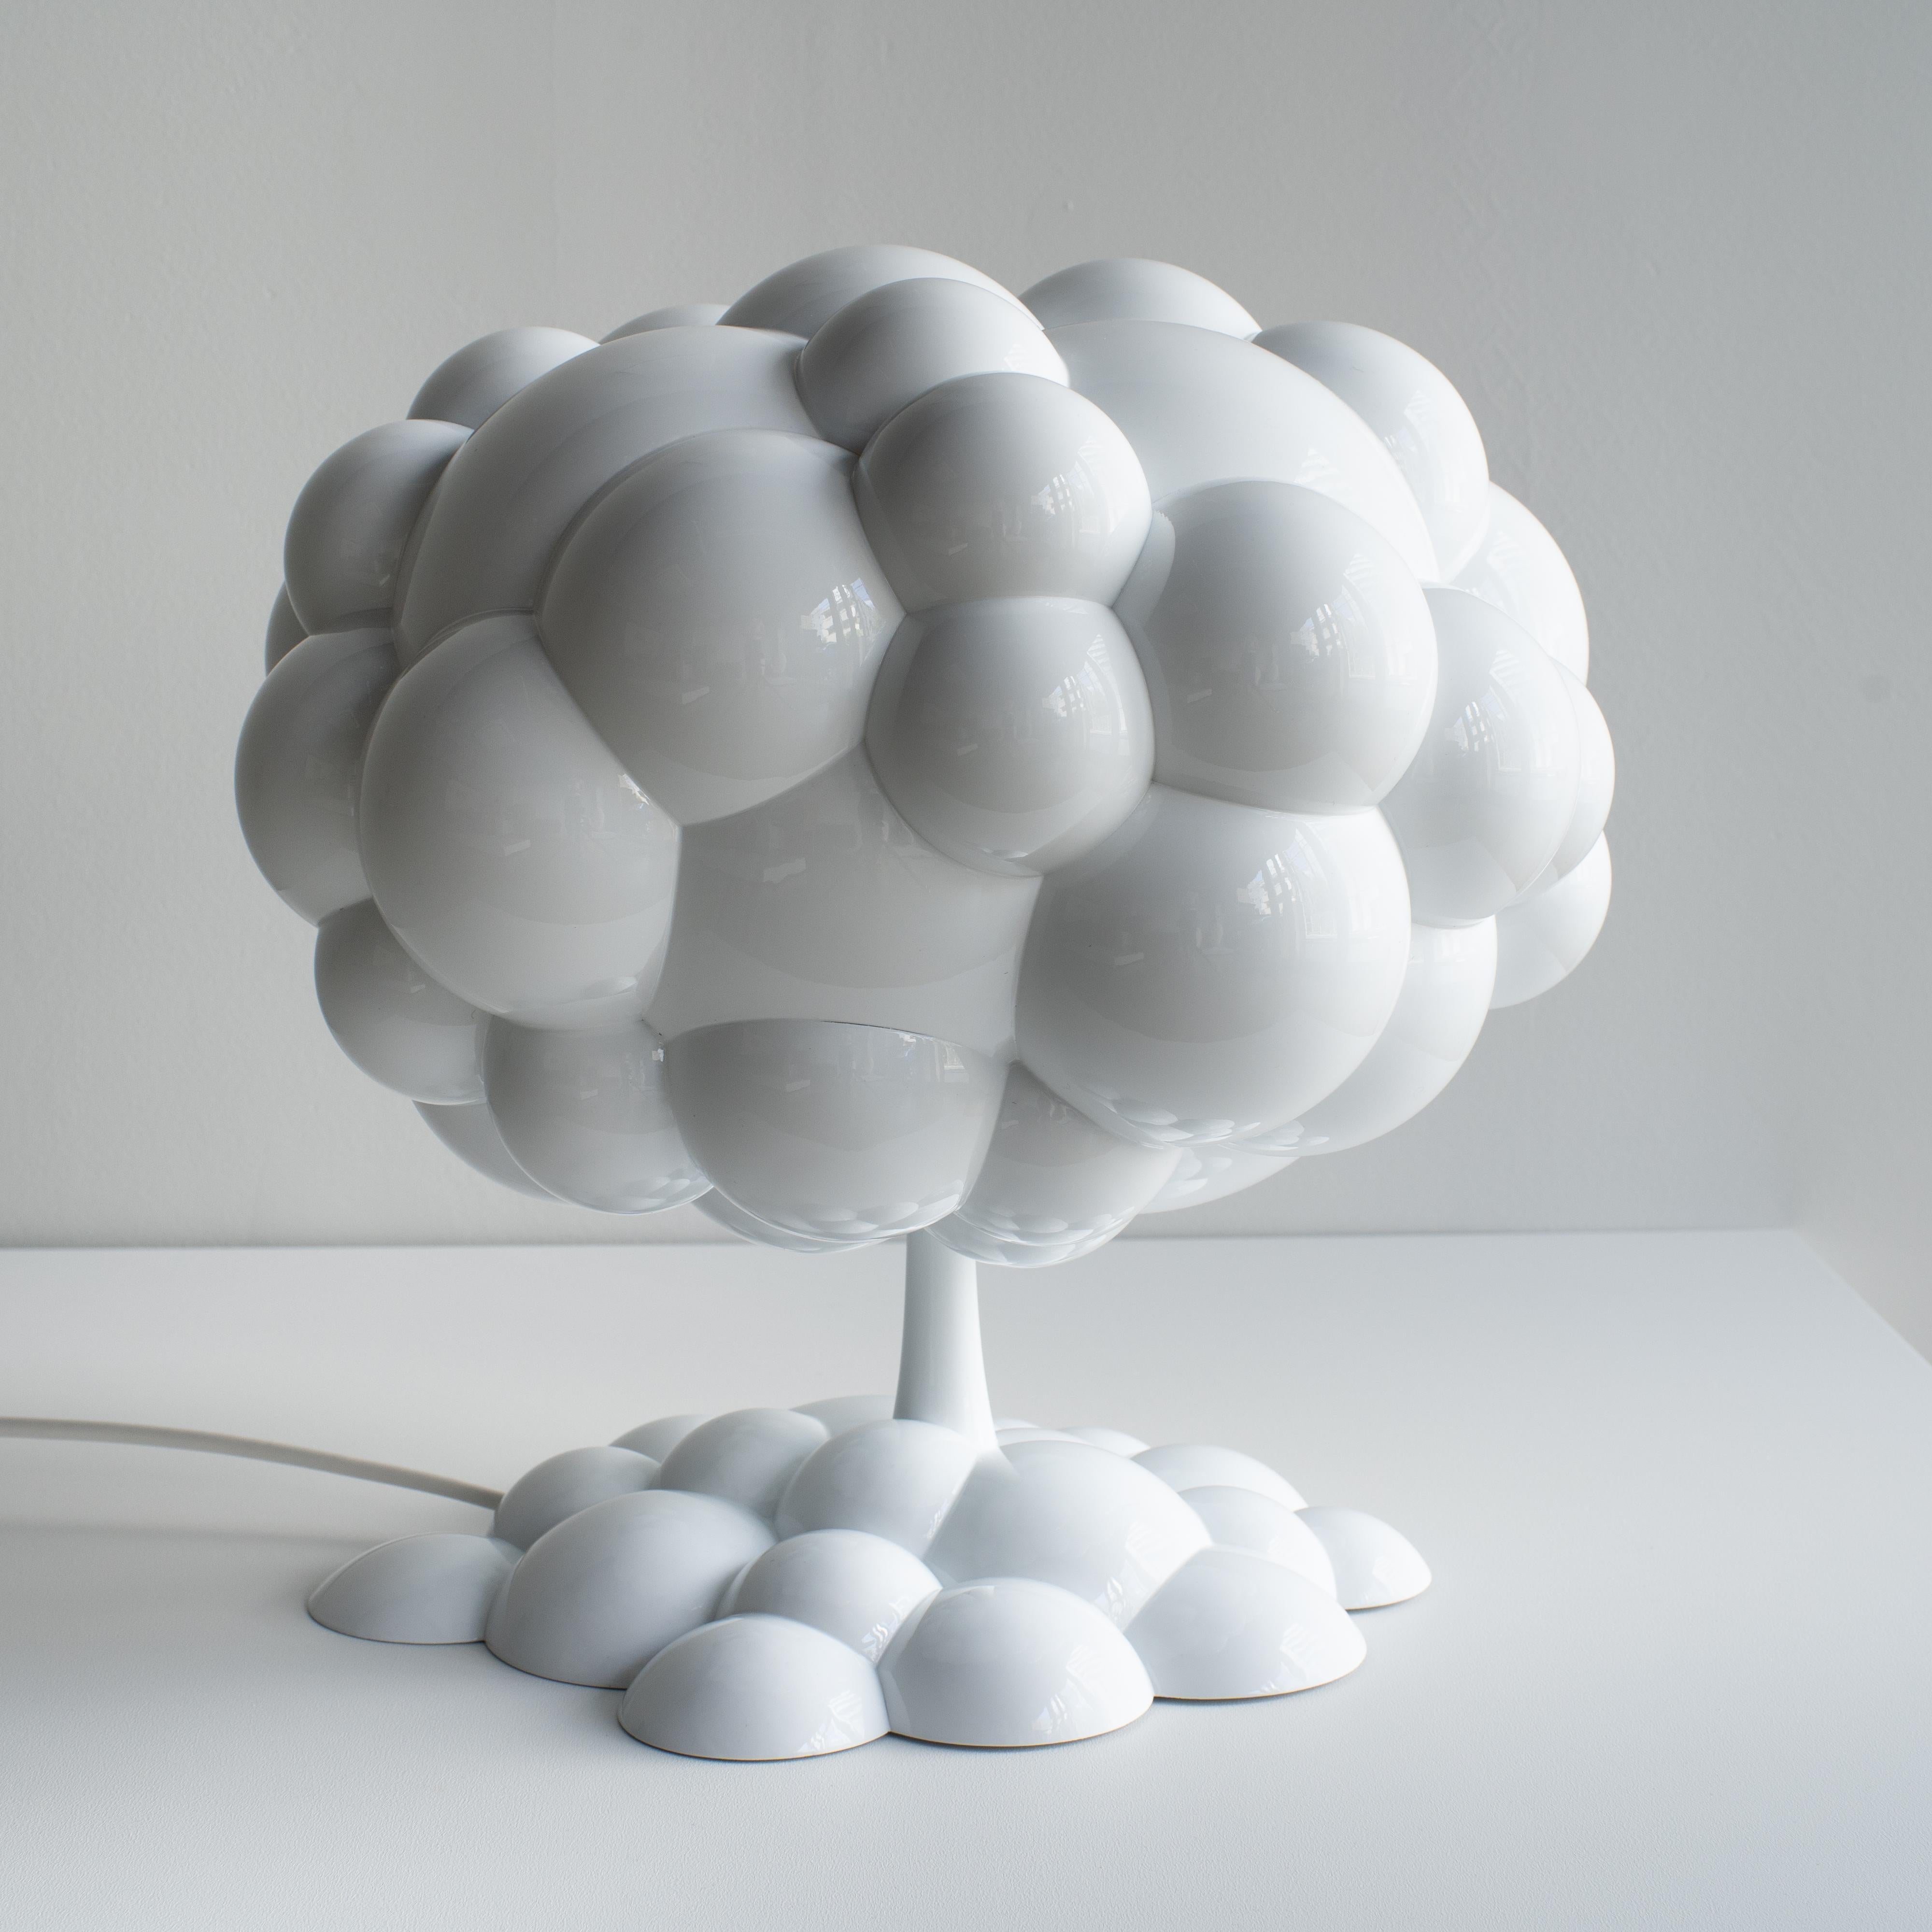 Lampe champignon conçue par h220430, Satoshi Itasaka. 
Le thème de cette œuvre est le nucléaire. Nous, les humains, traitons ces matériaux difficiles pour en faire de l'énergie électrique ou des armes. Ces woks nous disent qu'une technologie aussi